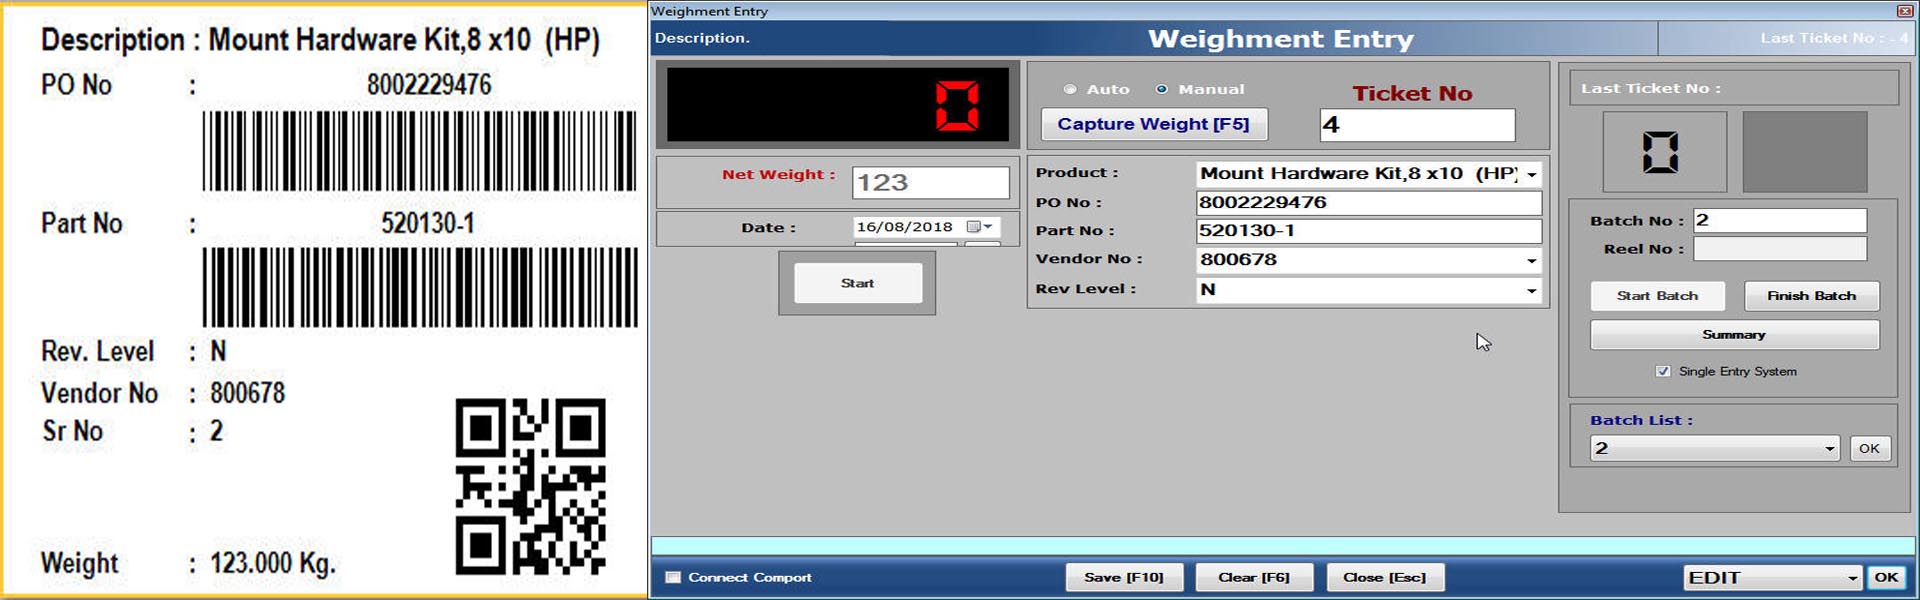 batch Weighment Software